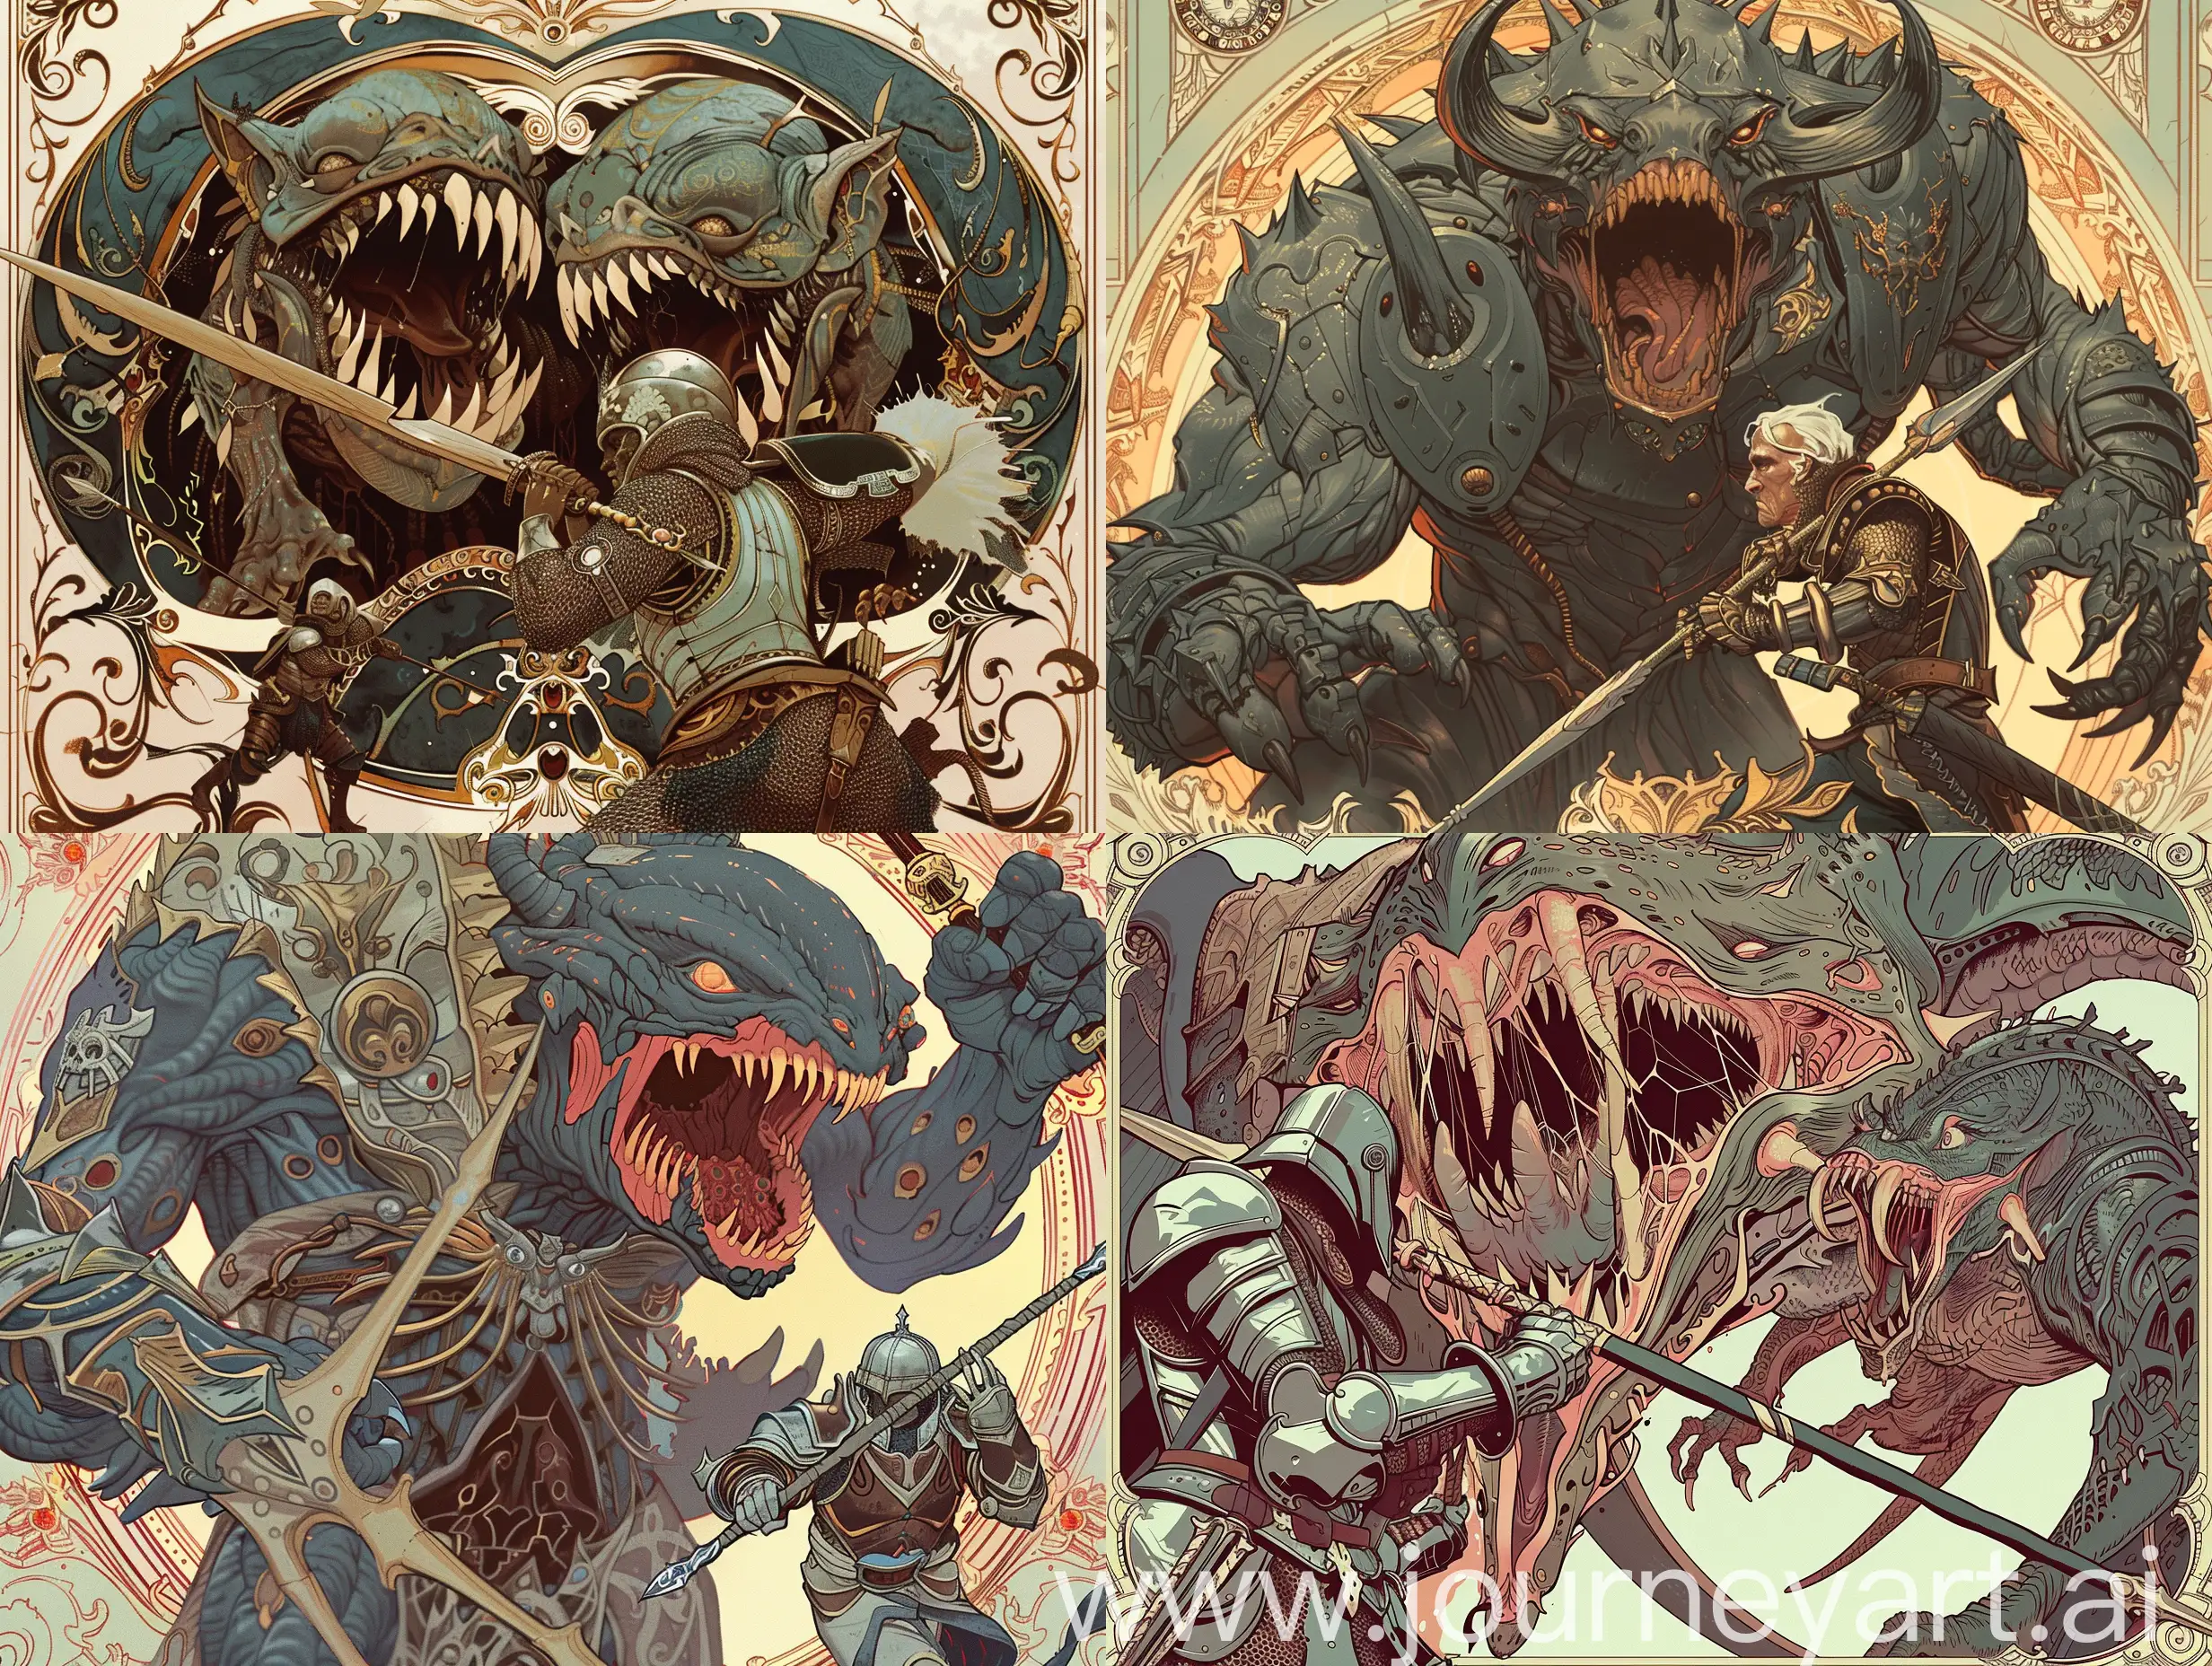 Epic-Art-Nouveau-Warrior-Confronts-Terrifying-TwoHeaded-Monster